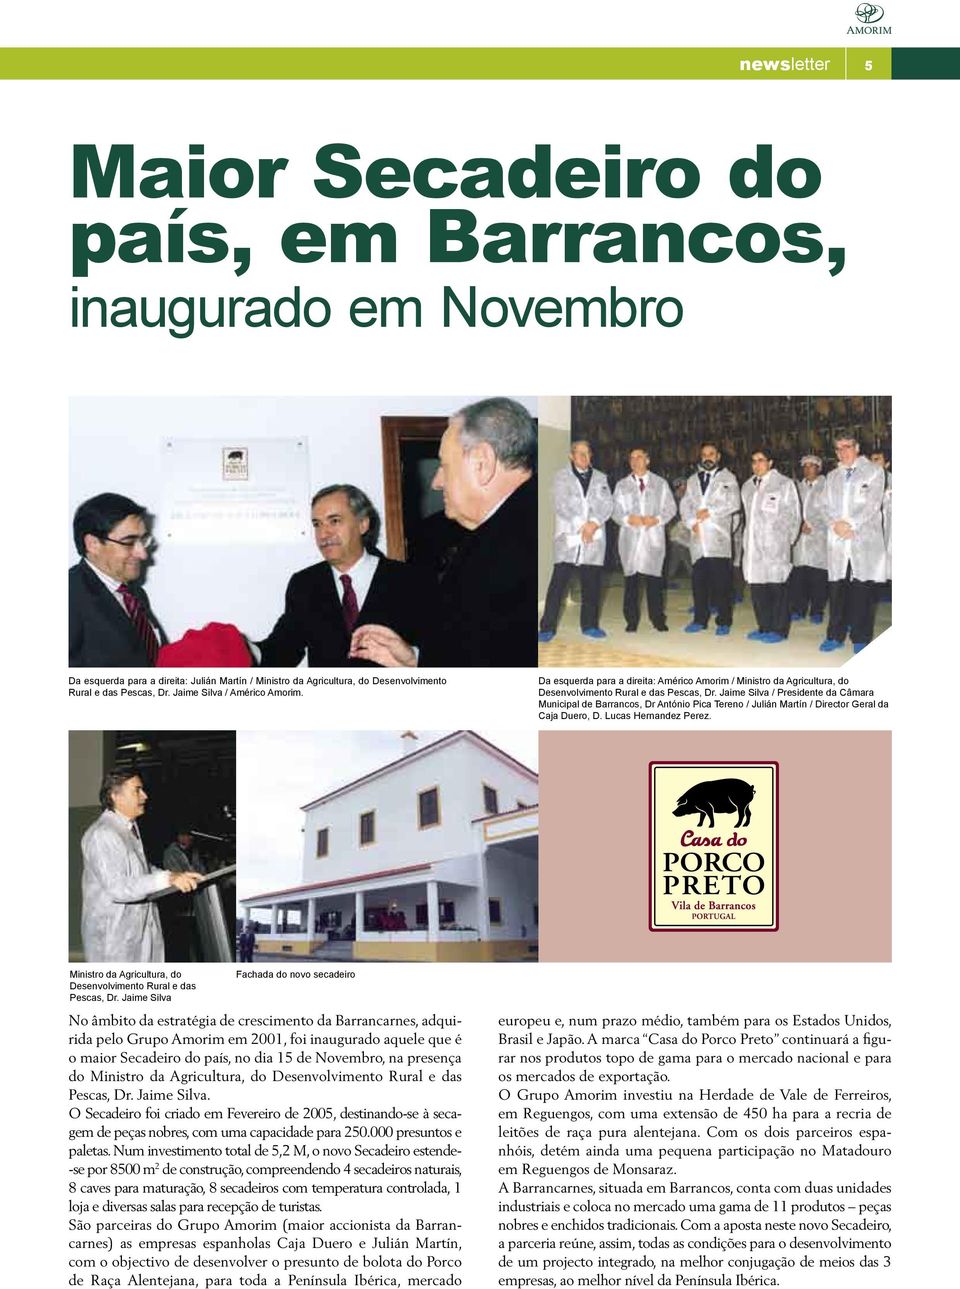 Jaime Silva / Presidente da Câmara Municipal de Barrancos, Dr António Pica Tereno / Julián Martín / Director Geral da Caja Duero, D. Lucas Hernandez Perez.